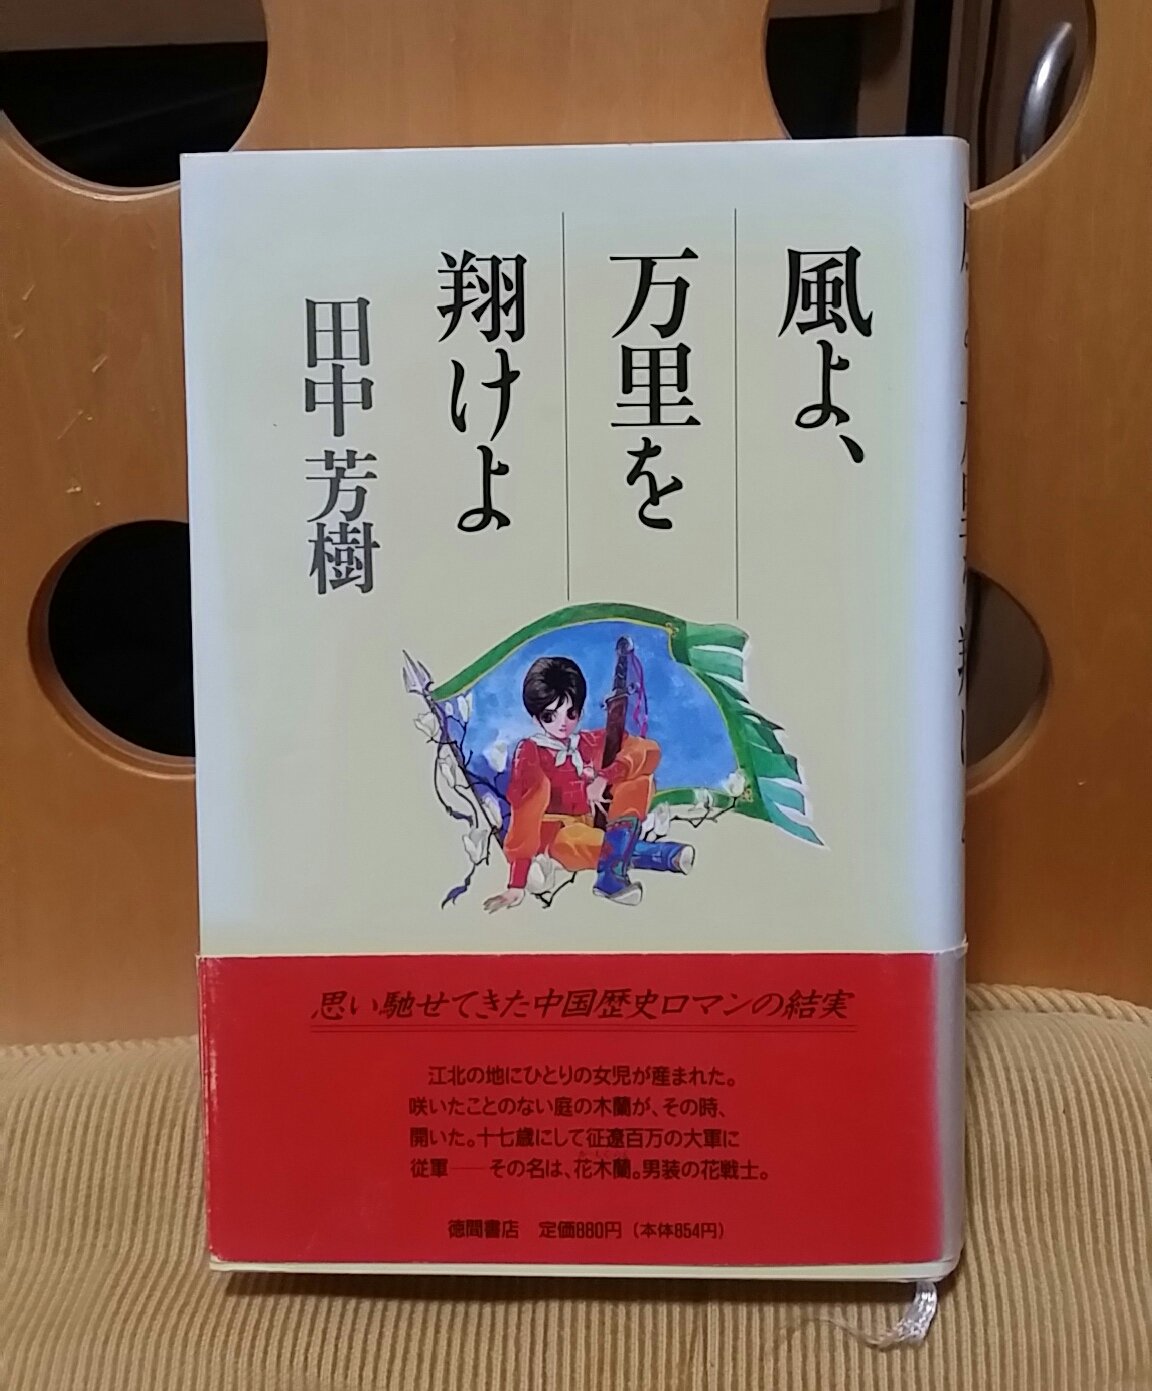 Misawa Yuko 引きこまらざるを得なくなった連休 弟から拝借したままだった 田中芳樹 氏の 風よ万里を翔けよ を再読することに 1991年の初版本 引っ越し時に手放したけれど まさか同時期に弟も買っていたとは ご縁の強さを感じる1冊です そうい